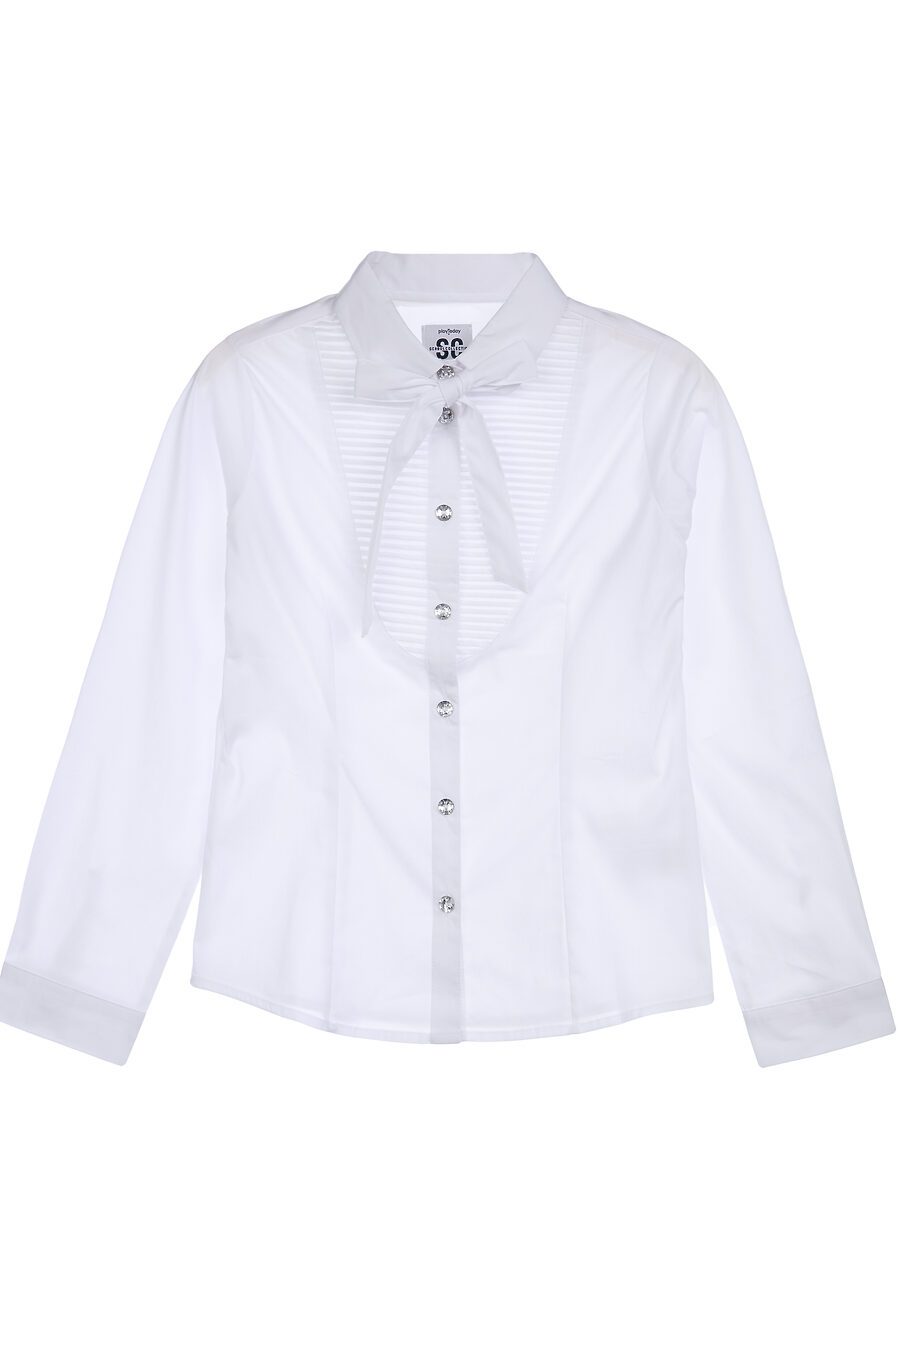 Блуза PLAYTODAY (785749), купить в Moyo.moda